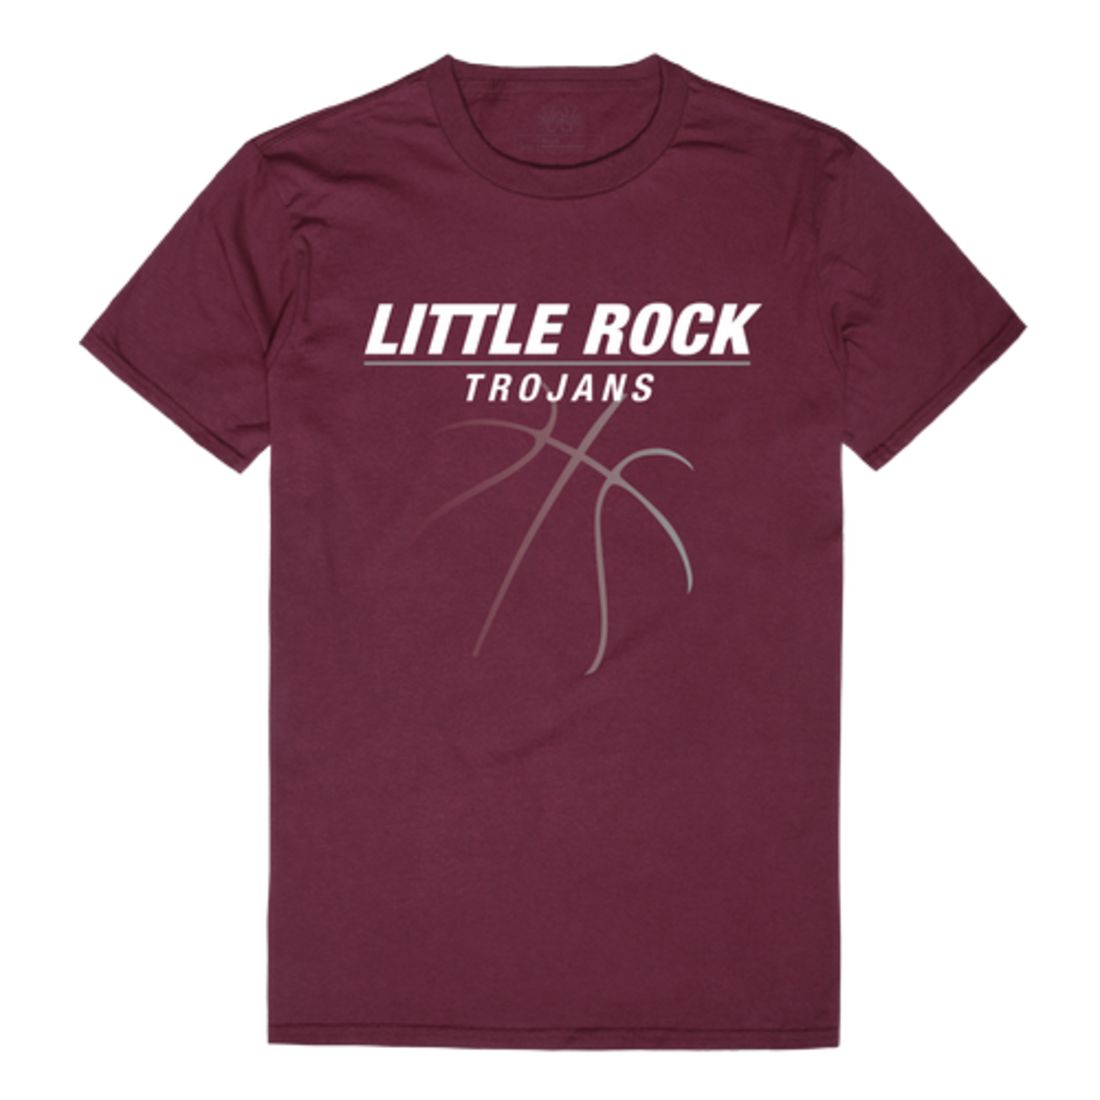 Arkansas at Little Rock Trojans Basketball T-Shirt